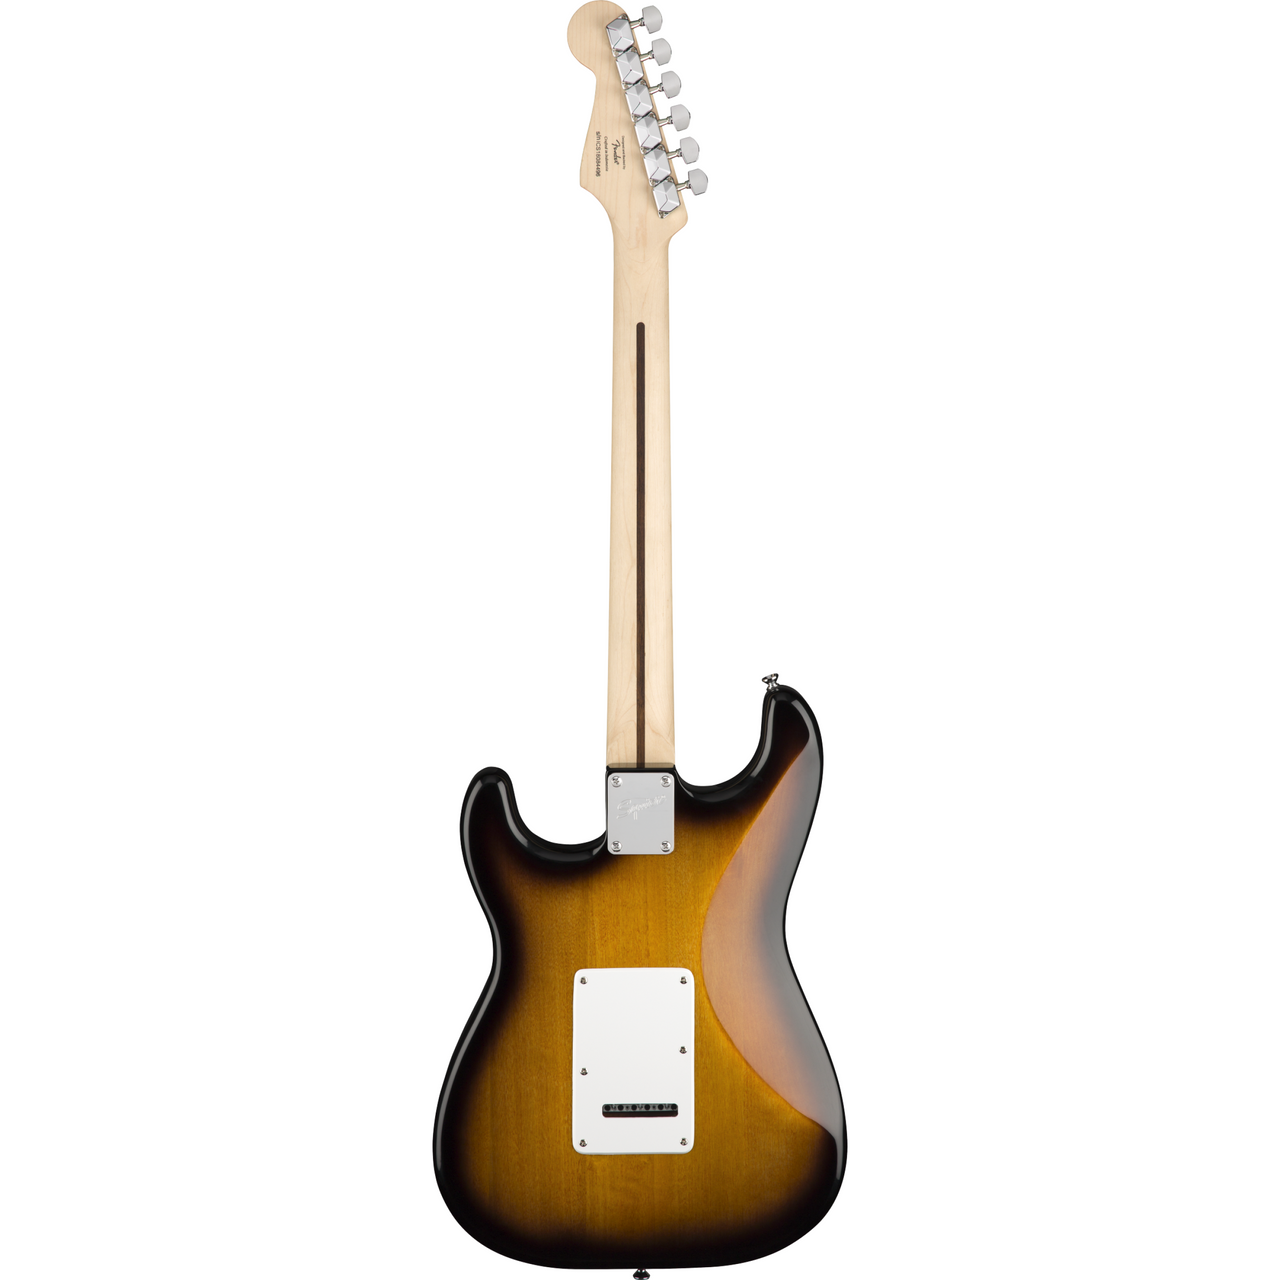 Paquete Guitarra Elect. Fender Pk Sq Strat Bsb Gb 10g 120v, 0371823032